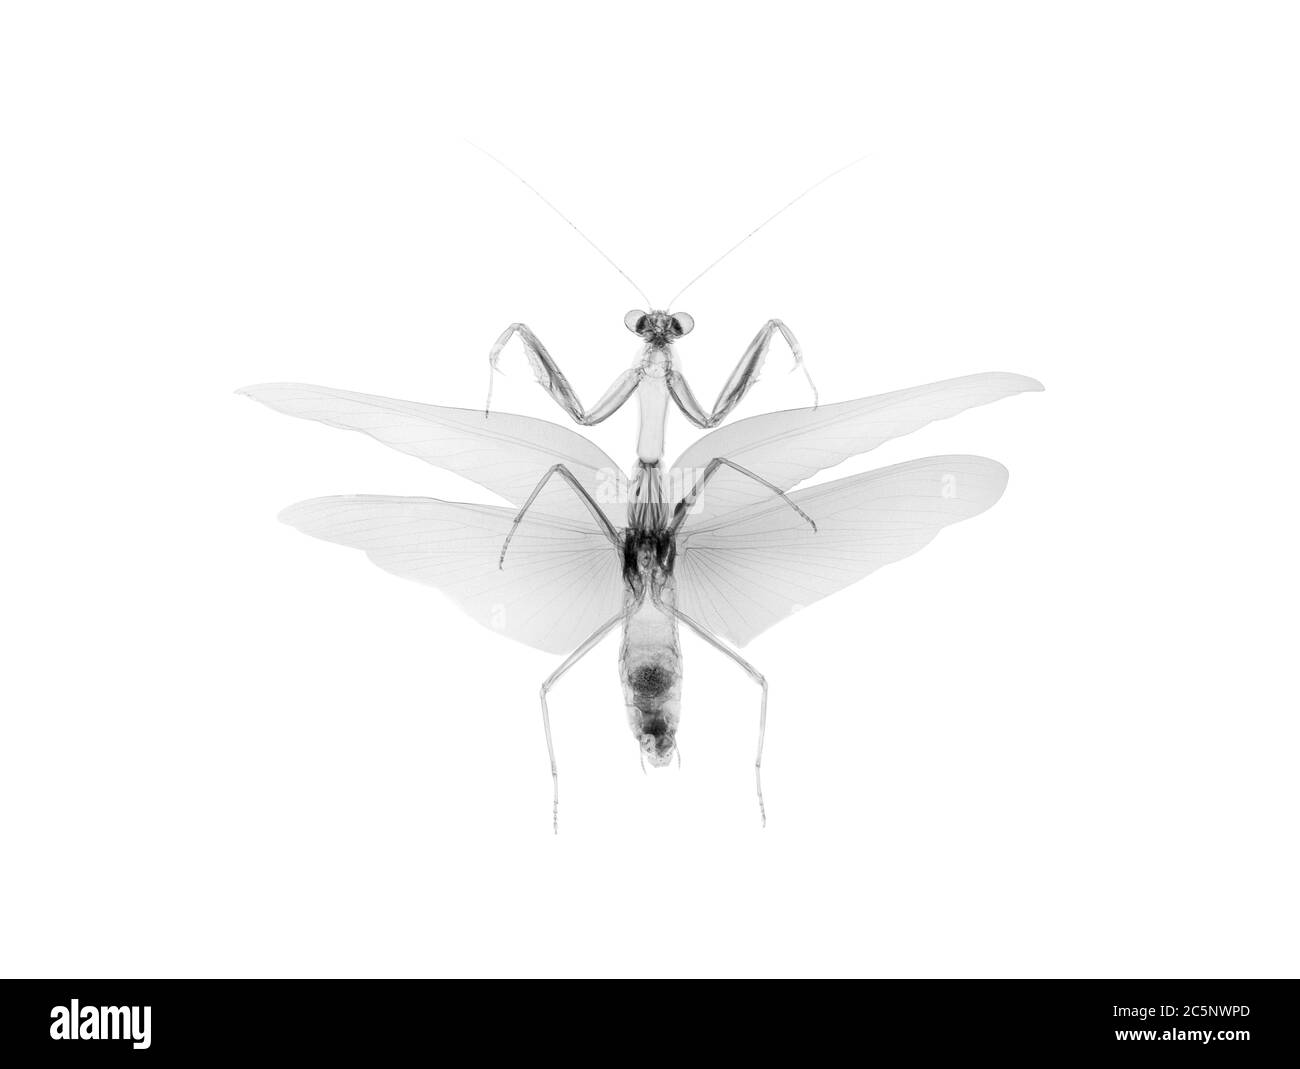 Preying mantis (Tenodera australasiae), X-ray. Stock Photo